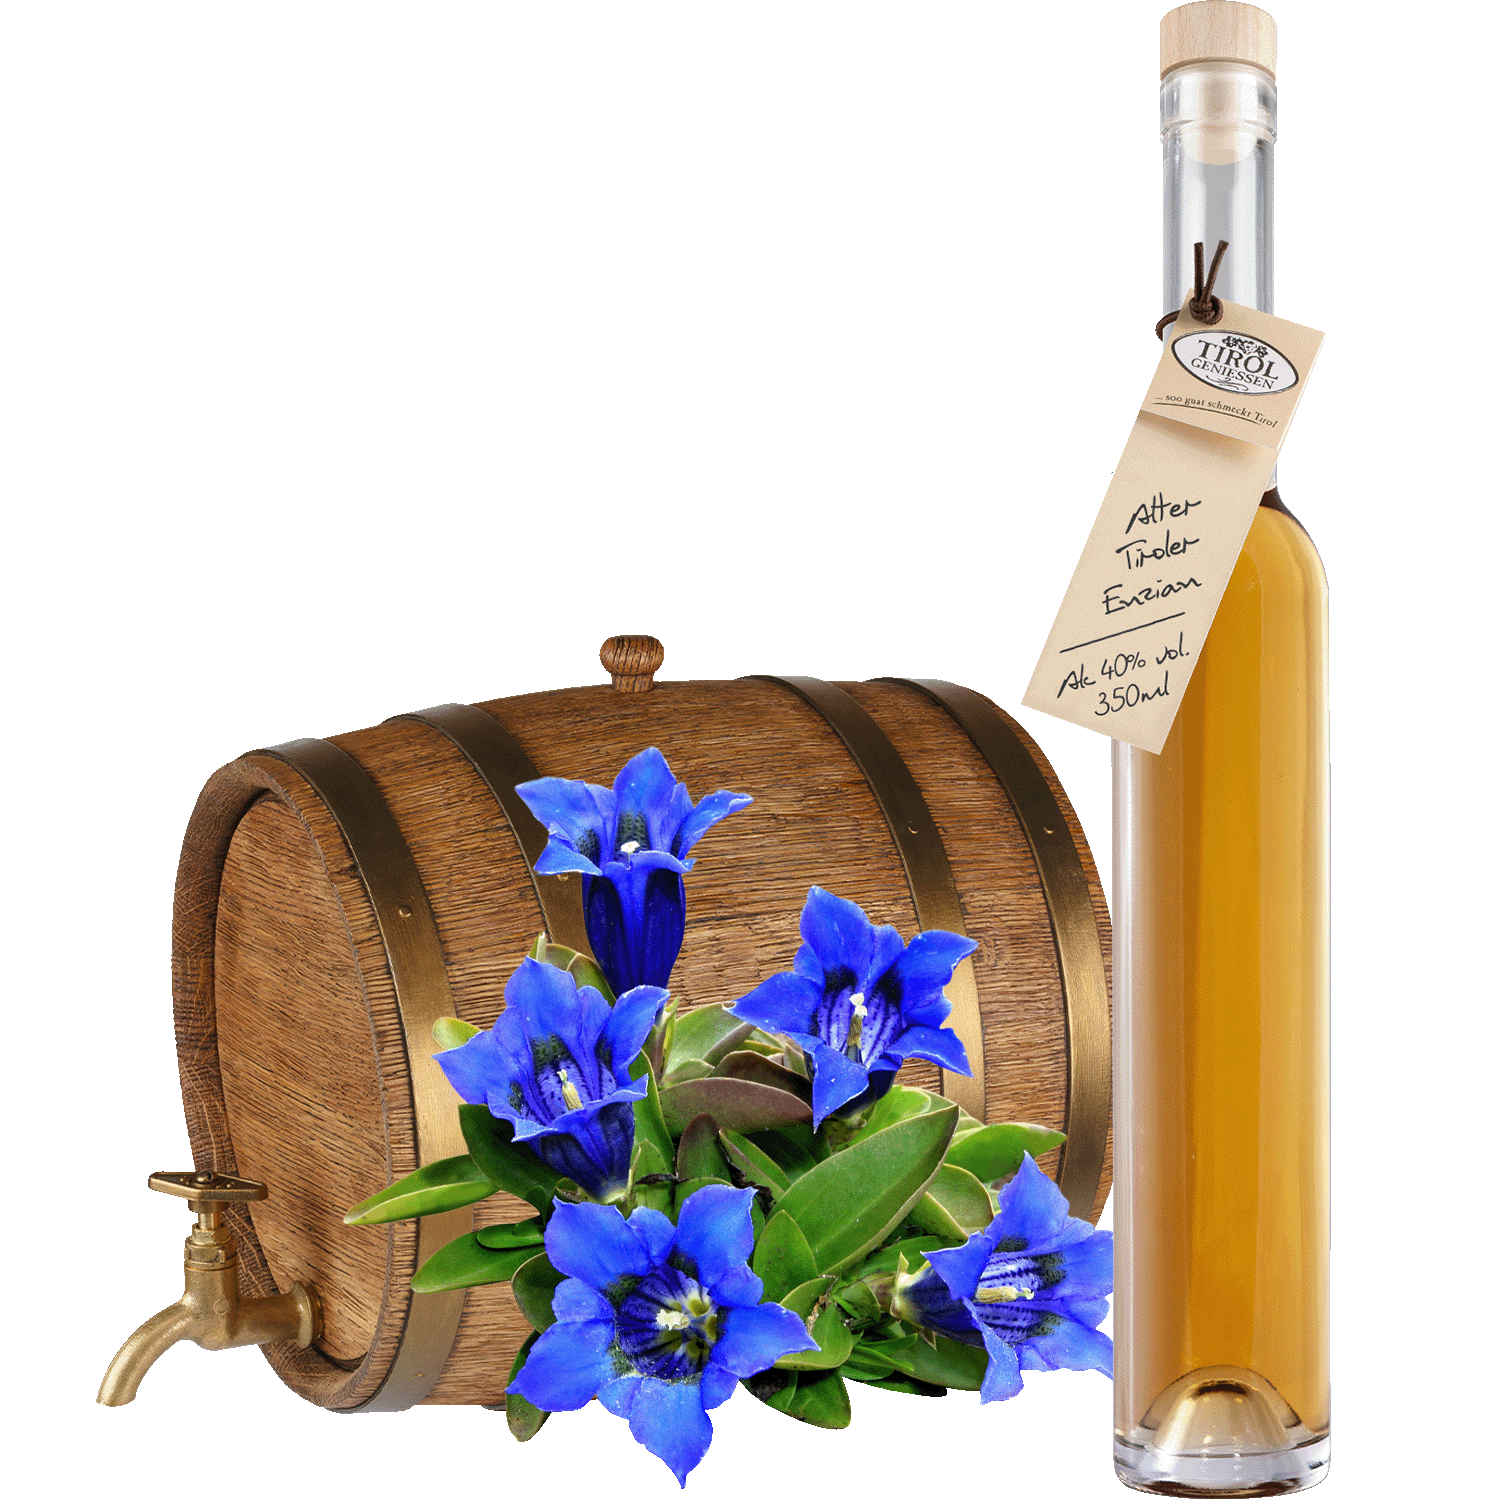 Old Gentian Spirit in gift bottle from Austria from Tirol Geniessen